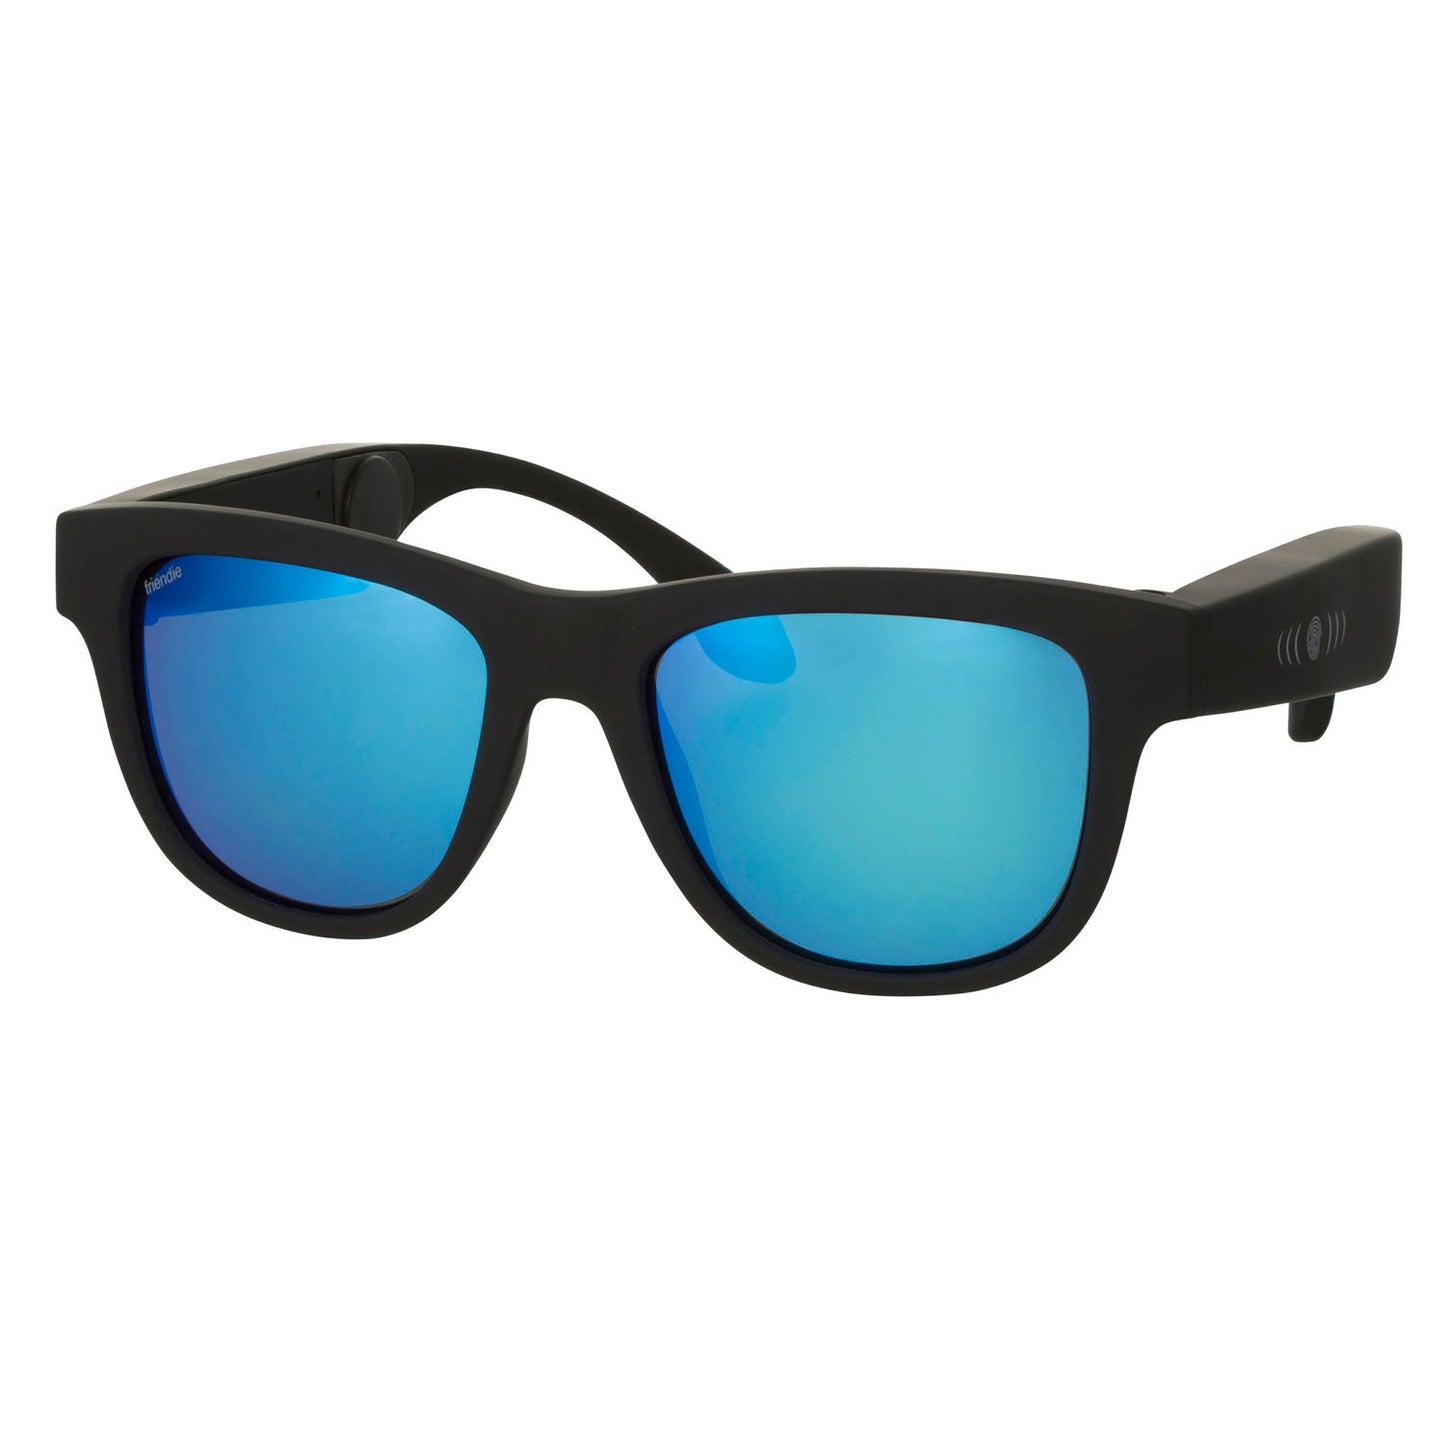 Frames Classic Cobalt Blue Polarised Lens (Audio Sunglasses), Sunglasses Headphones, Friendie Audio Pty Ltd, Friendie Audio Pty Ltd